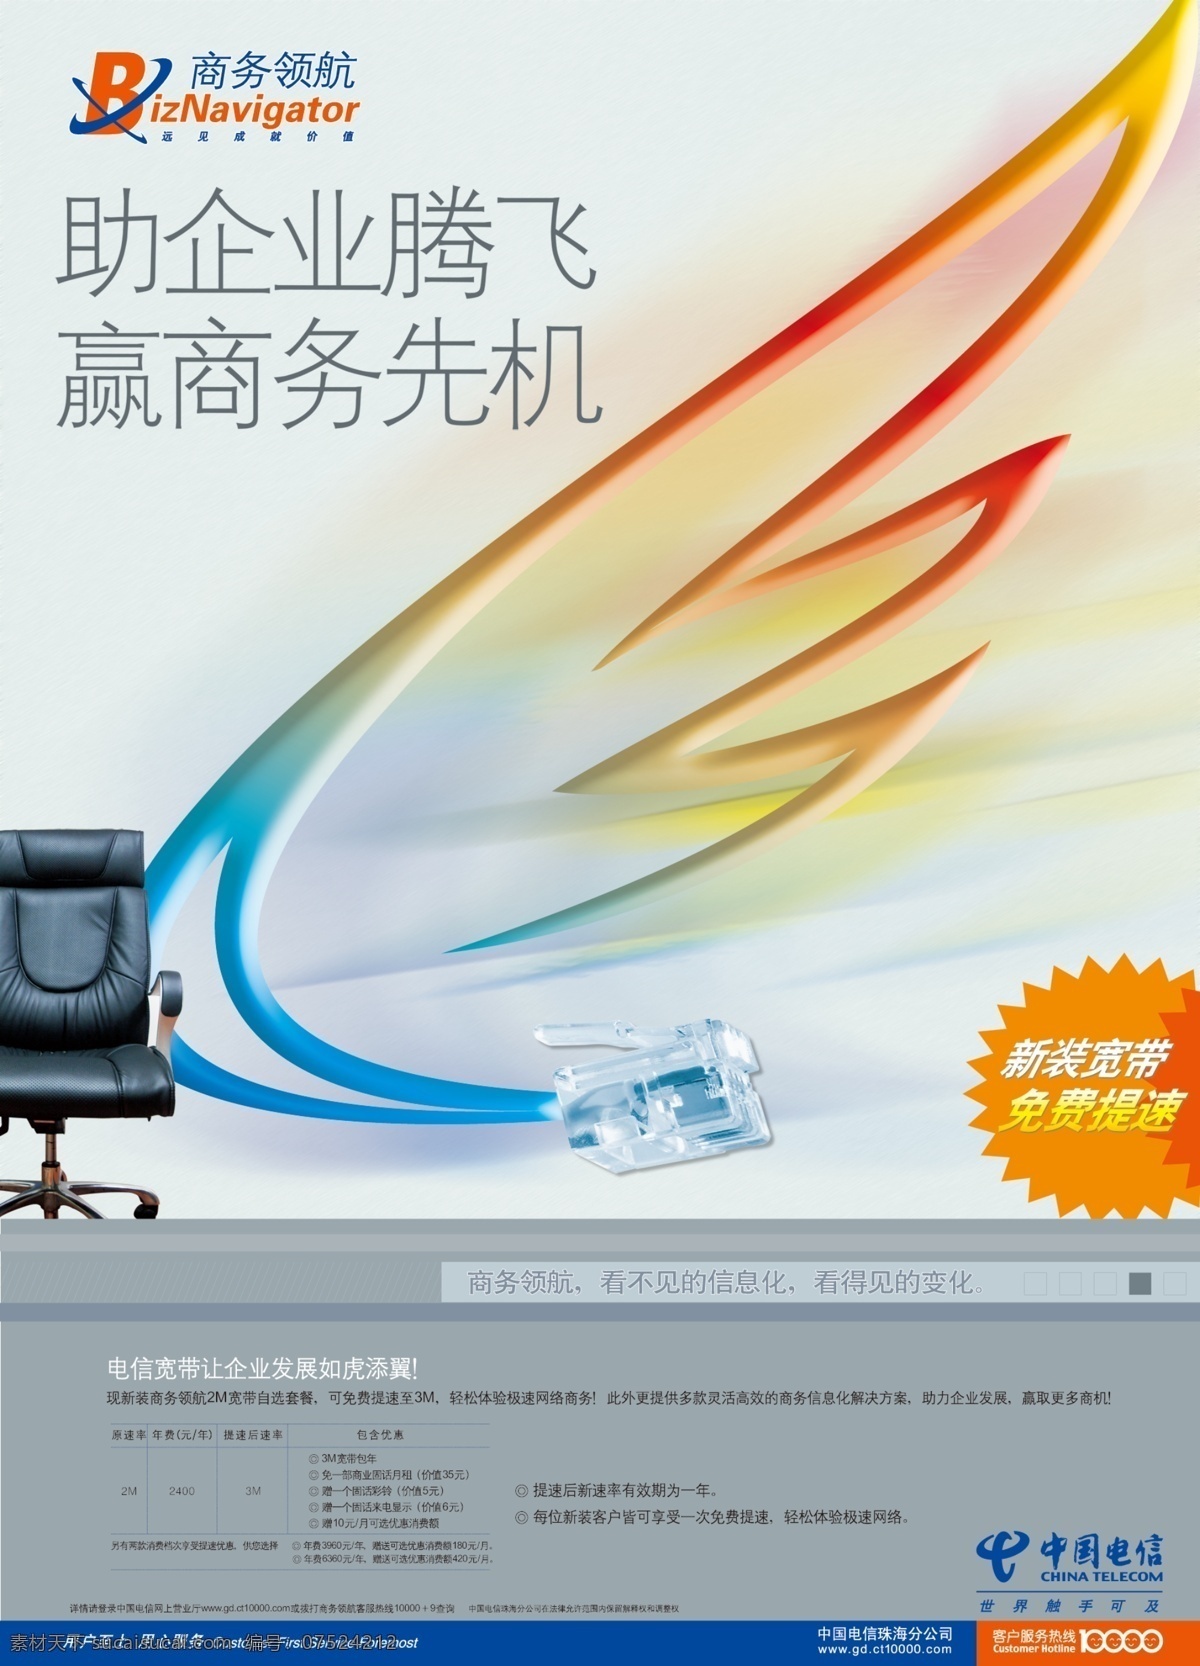 提速 翅膀 广告设计模板 宽带提速 商务 网线 源文件 中国电信 助企业腾飞 赢商务先机 企业文化海报